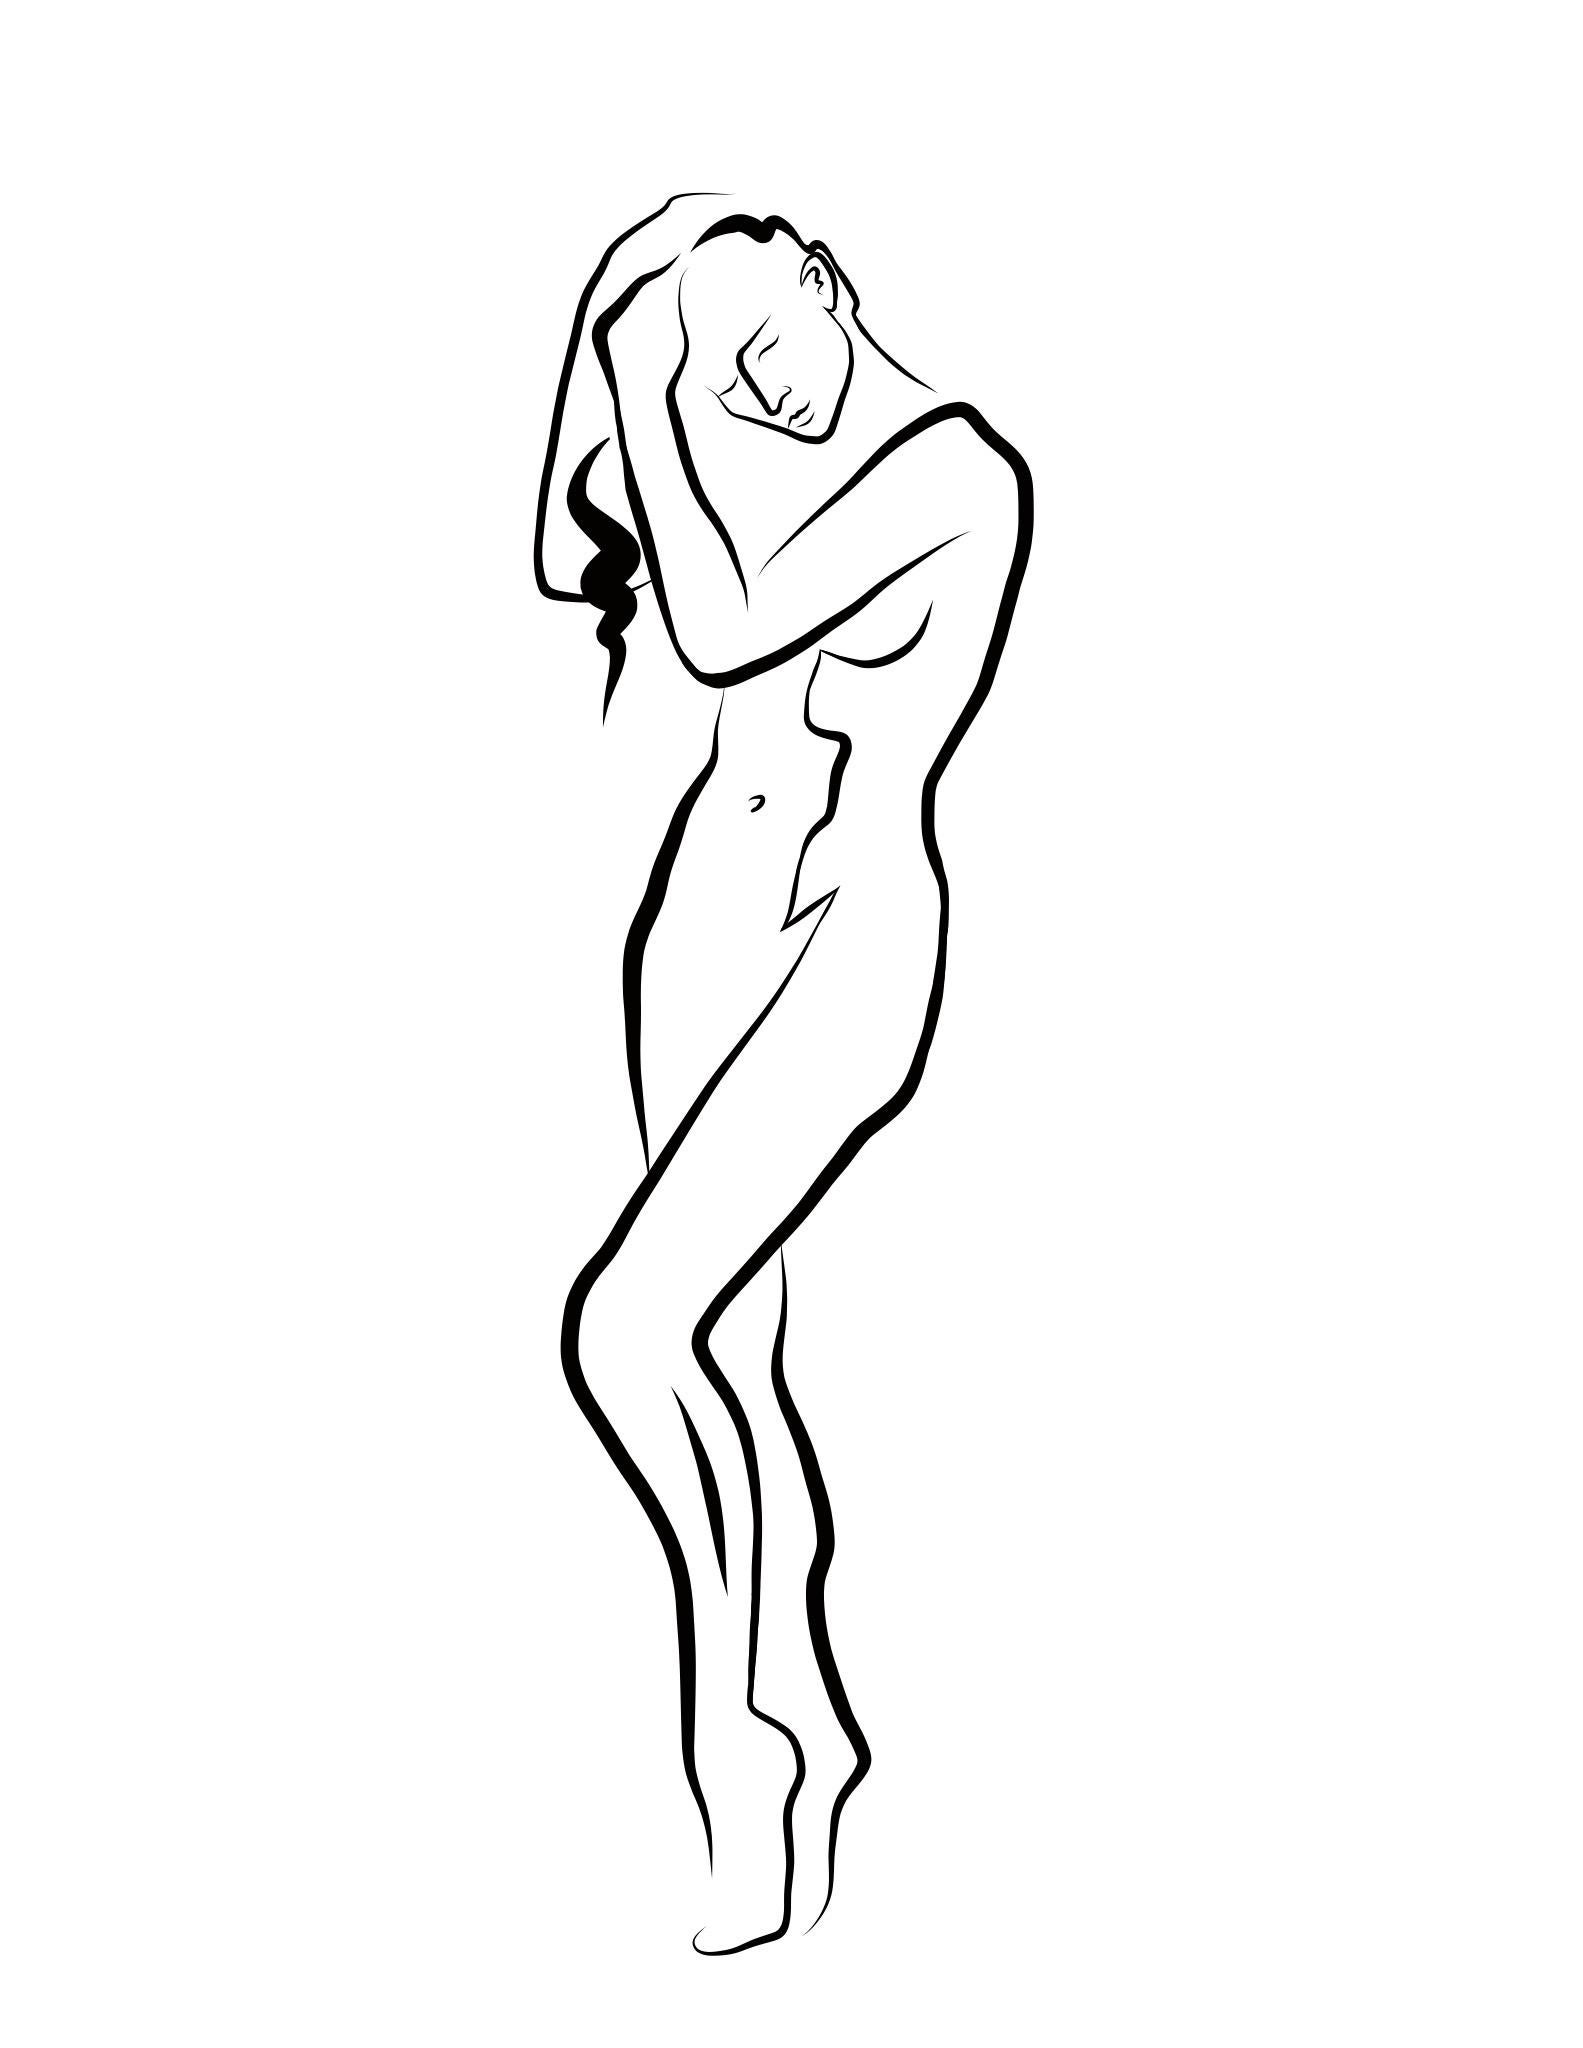 Michael Binkley Nude Print - Haiku #60, 1/50 - Digital Vector Drawing Female Nude Standing Arranging Hair